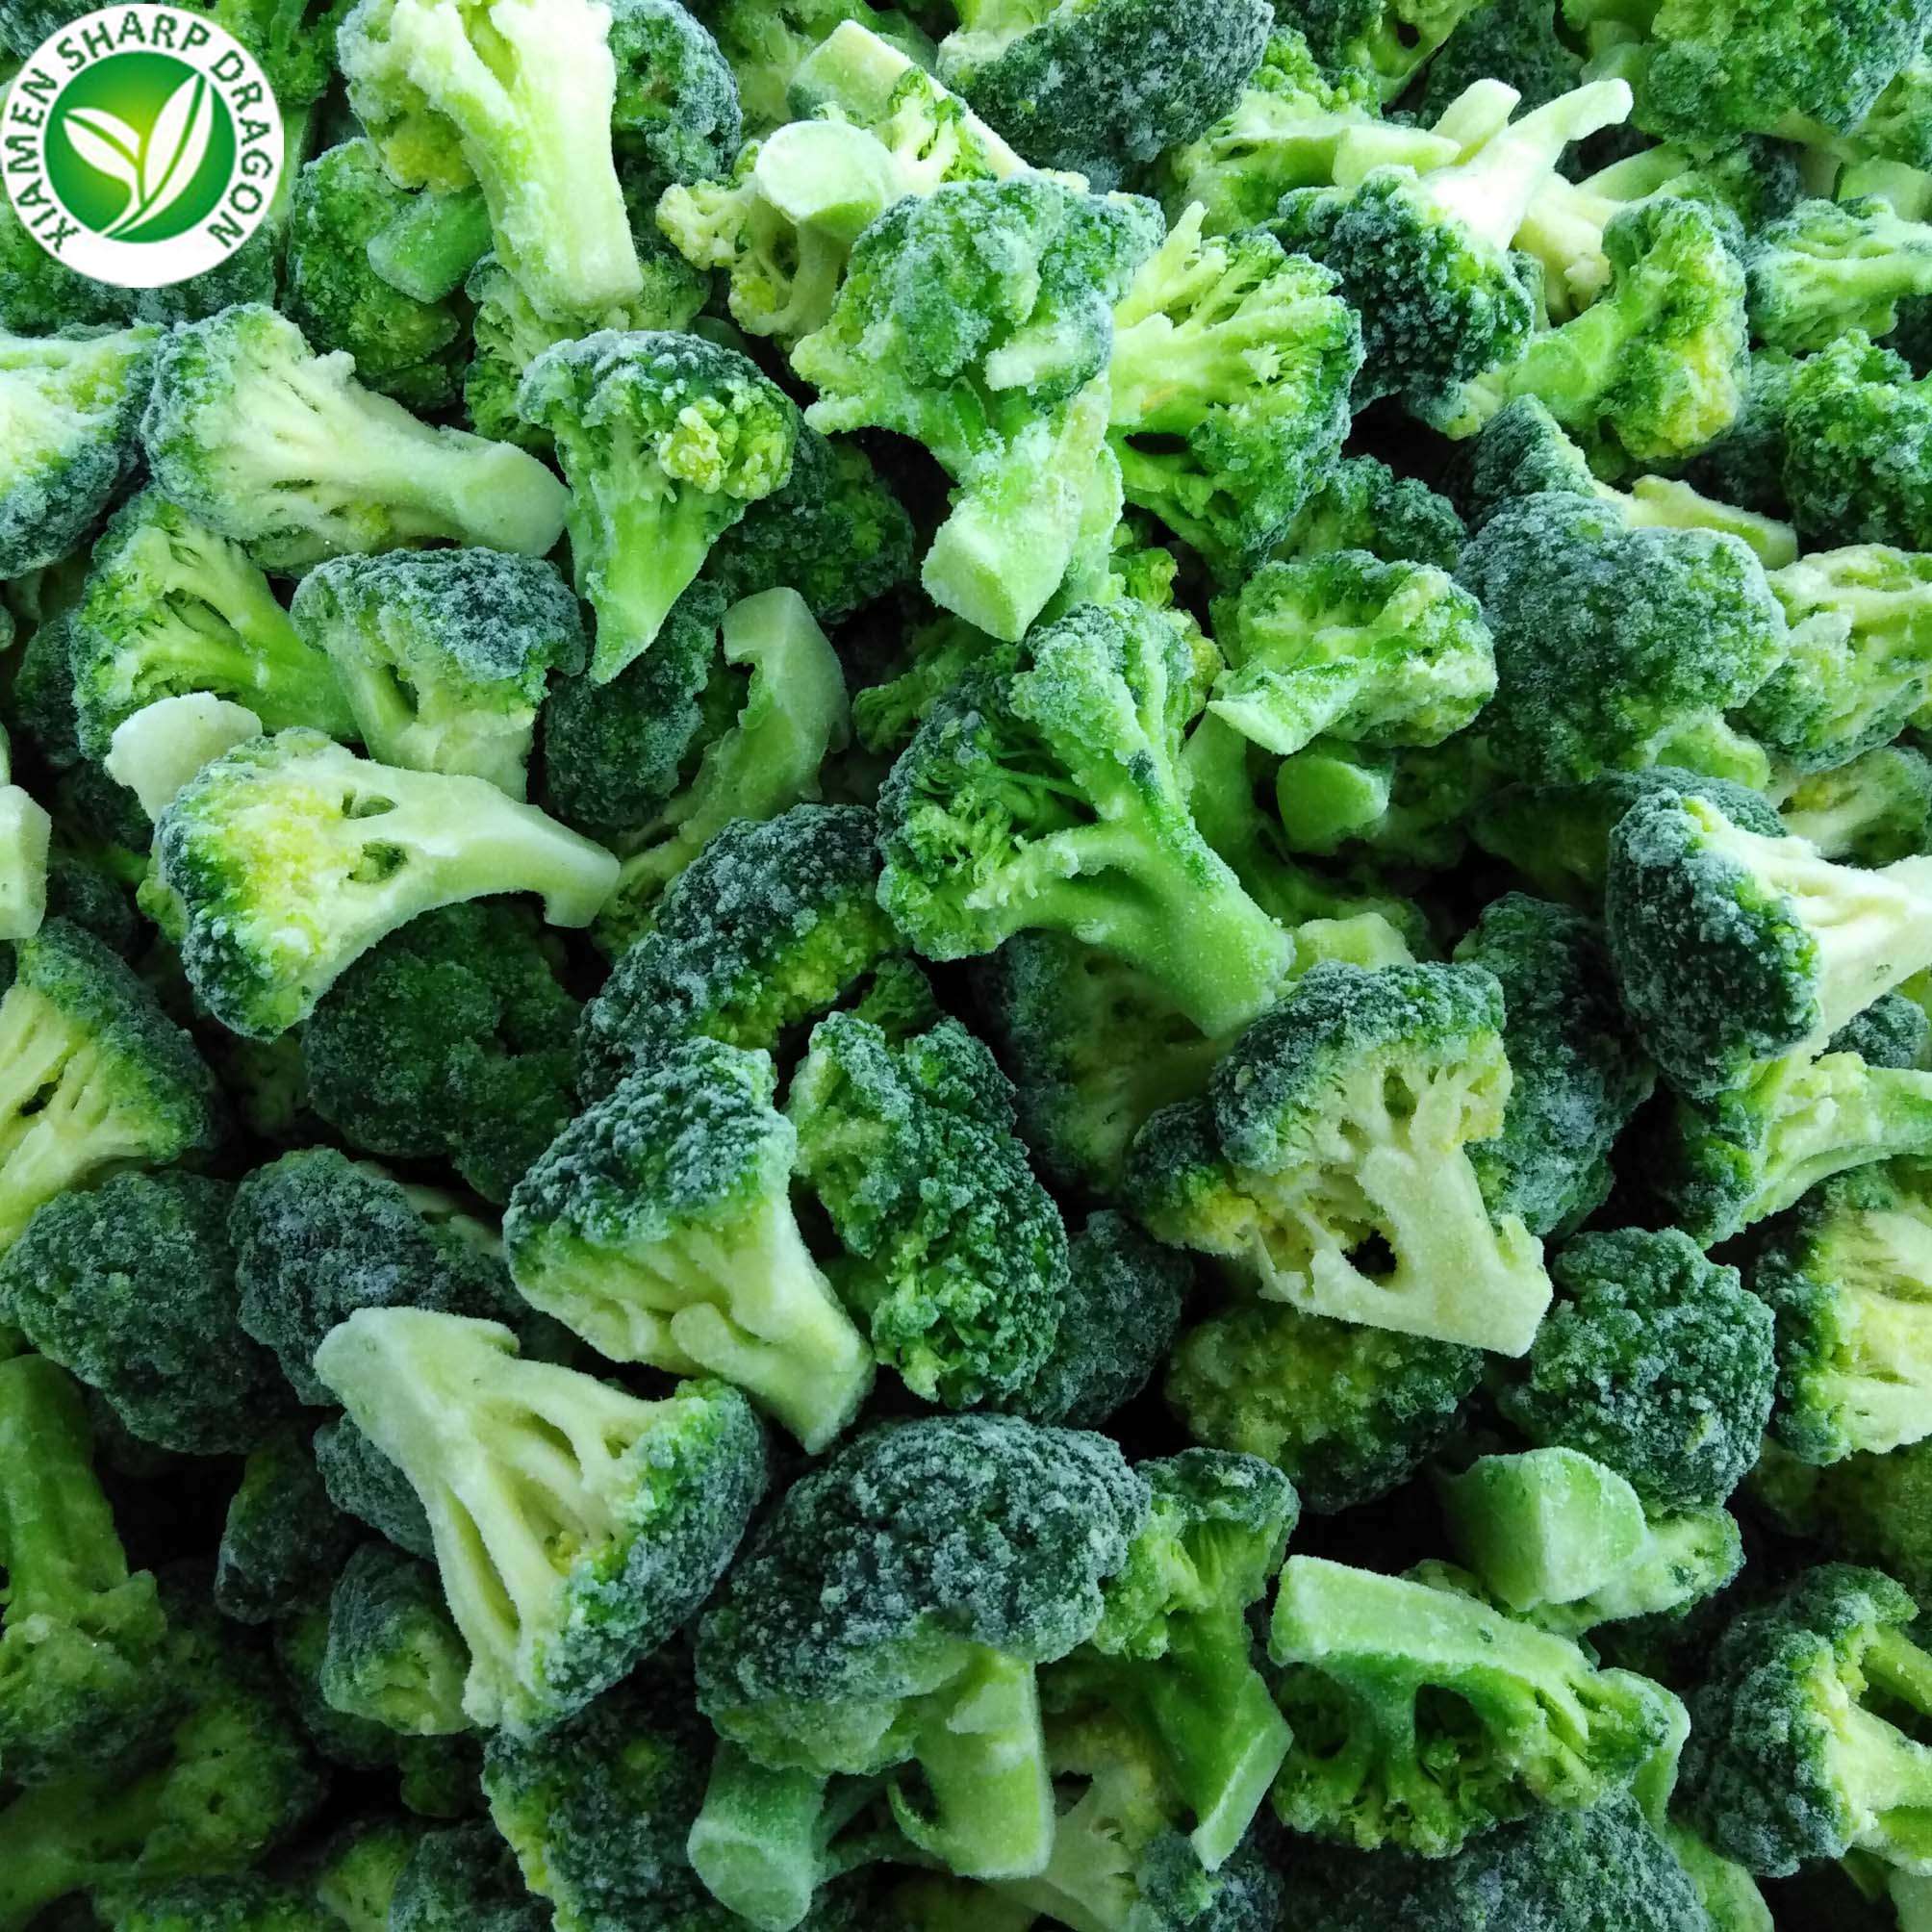 Bulk frozen broccoli